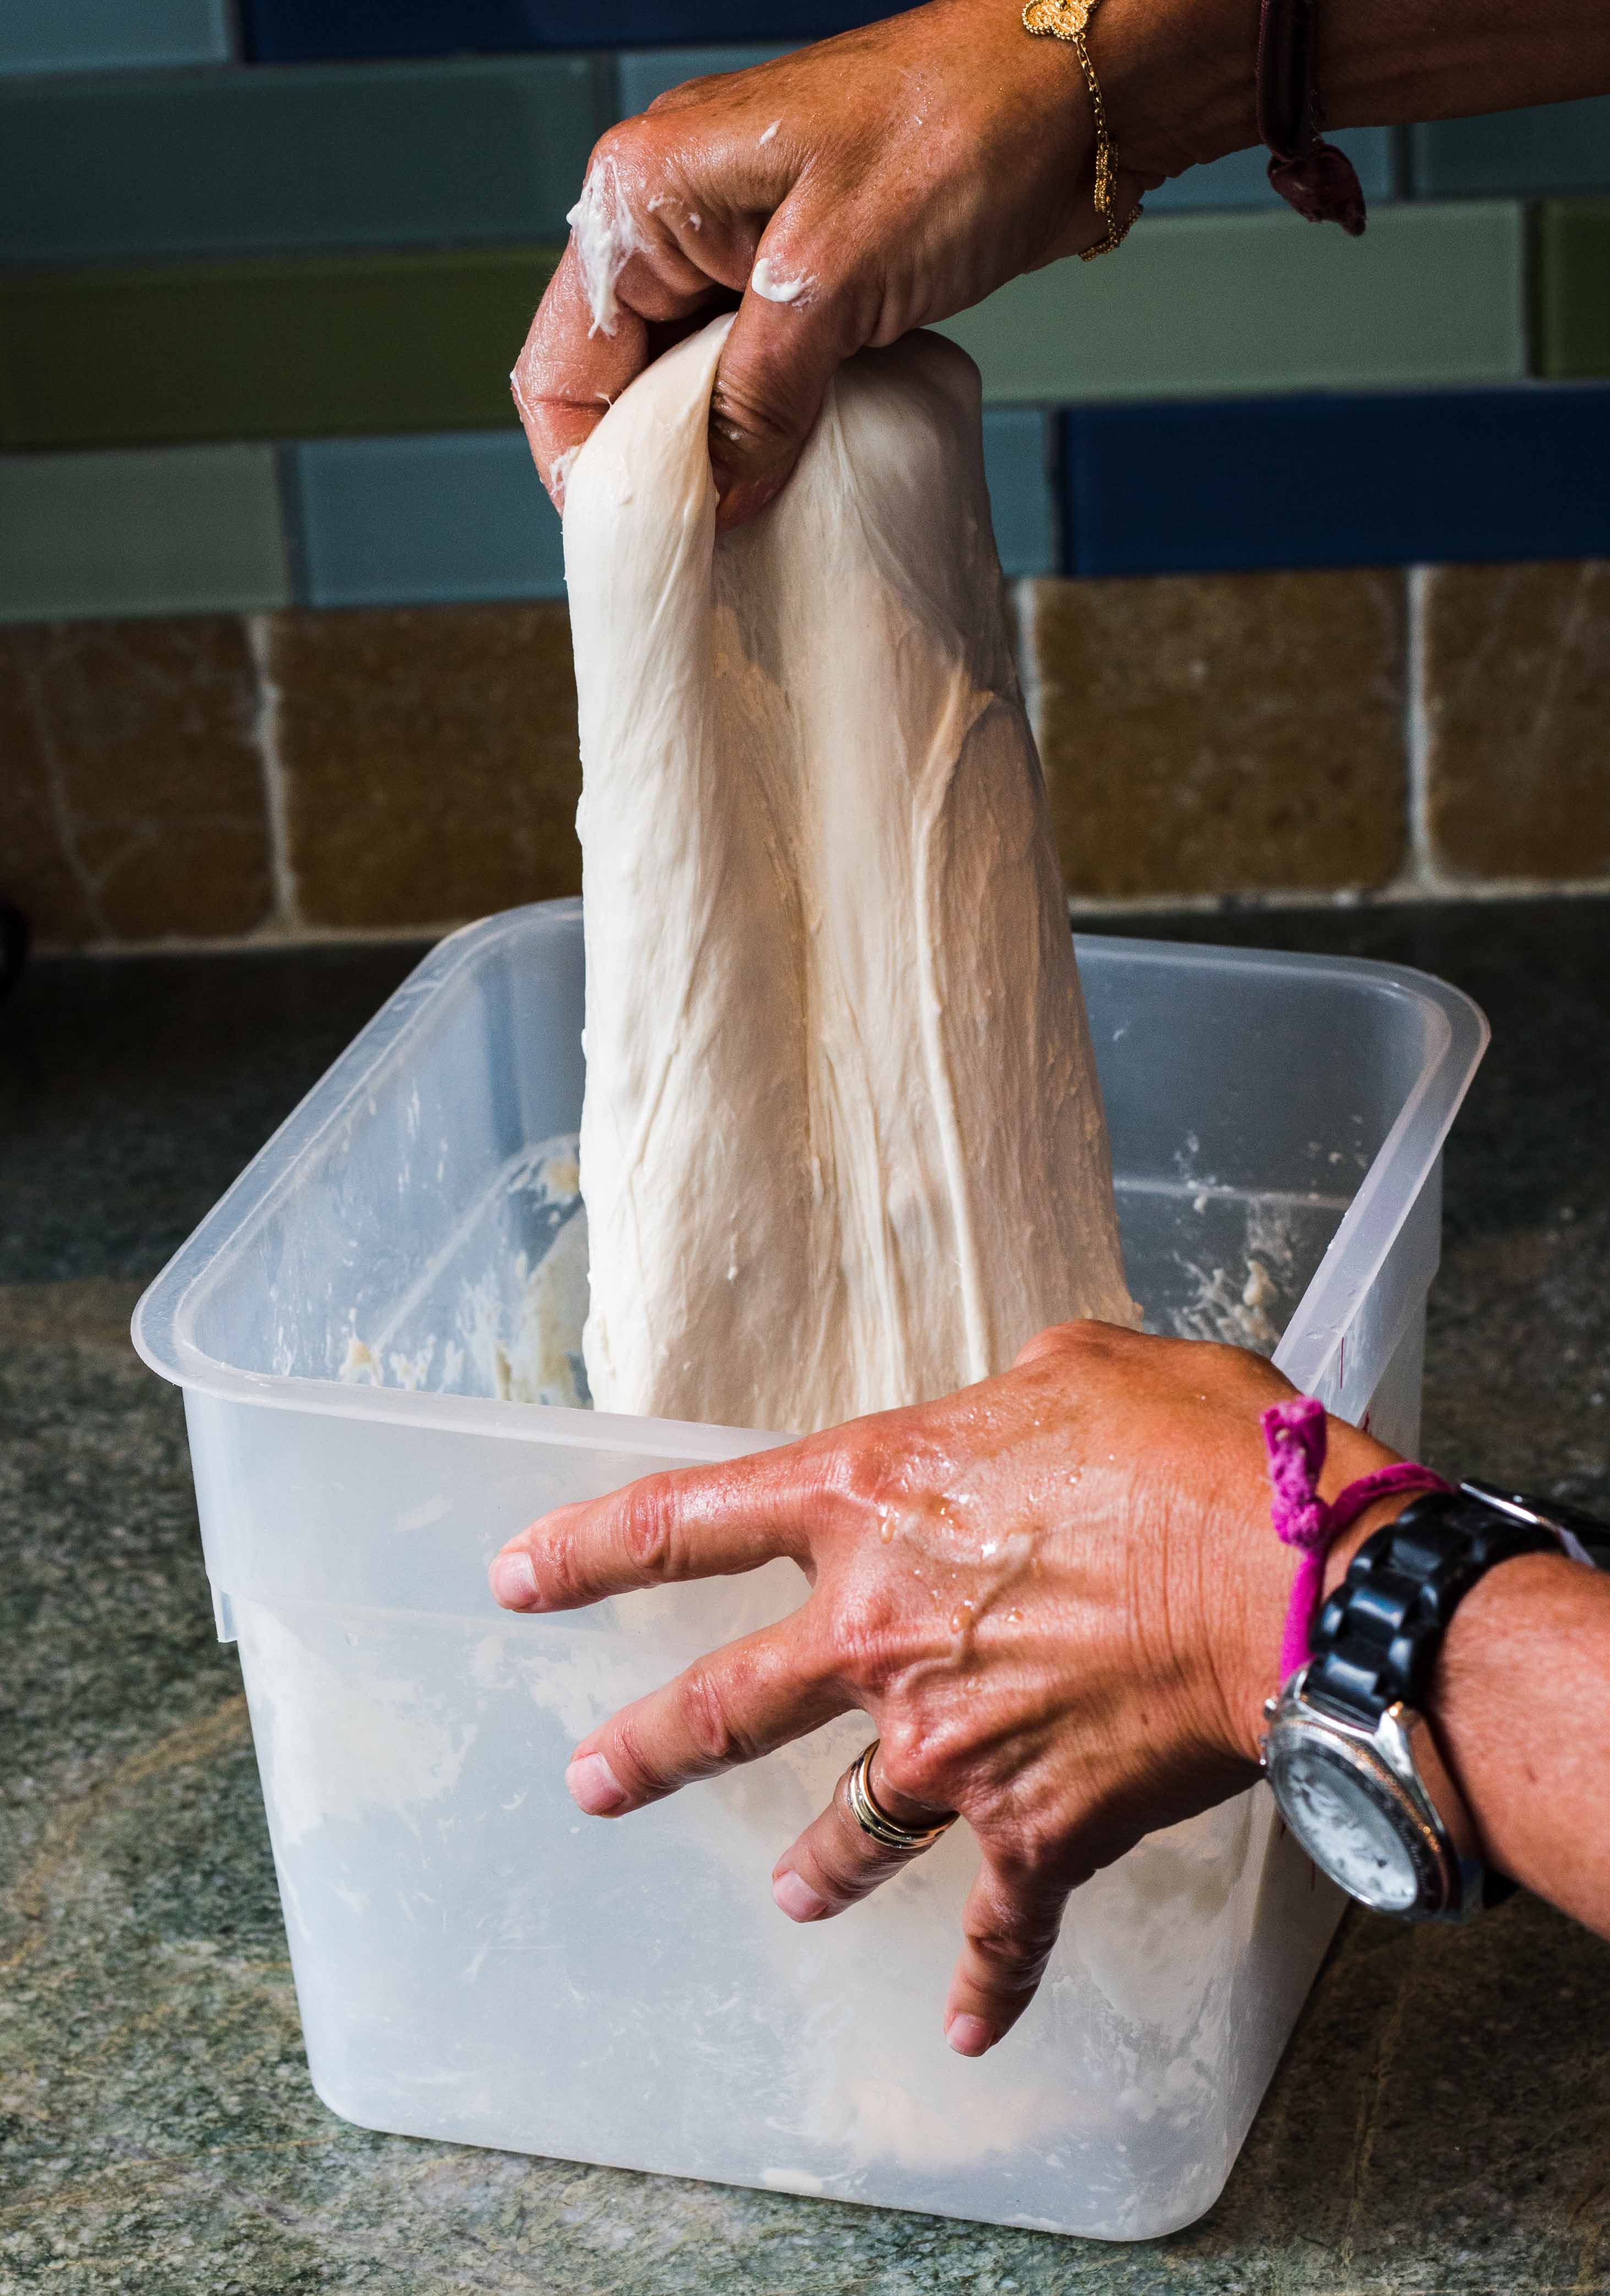 Maura folds the dough to develop gluten